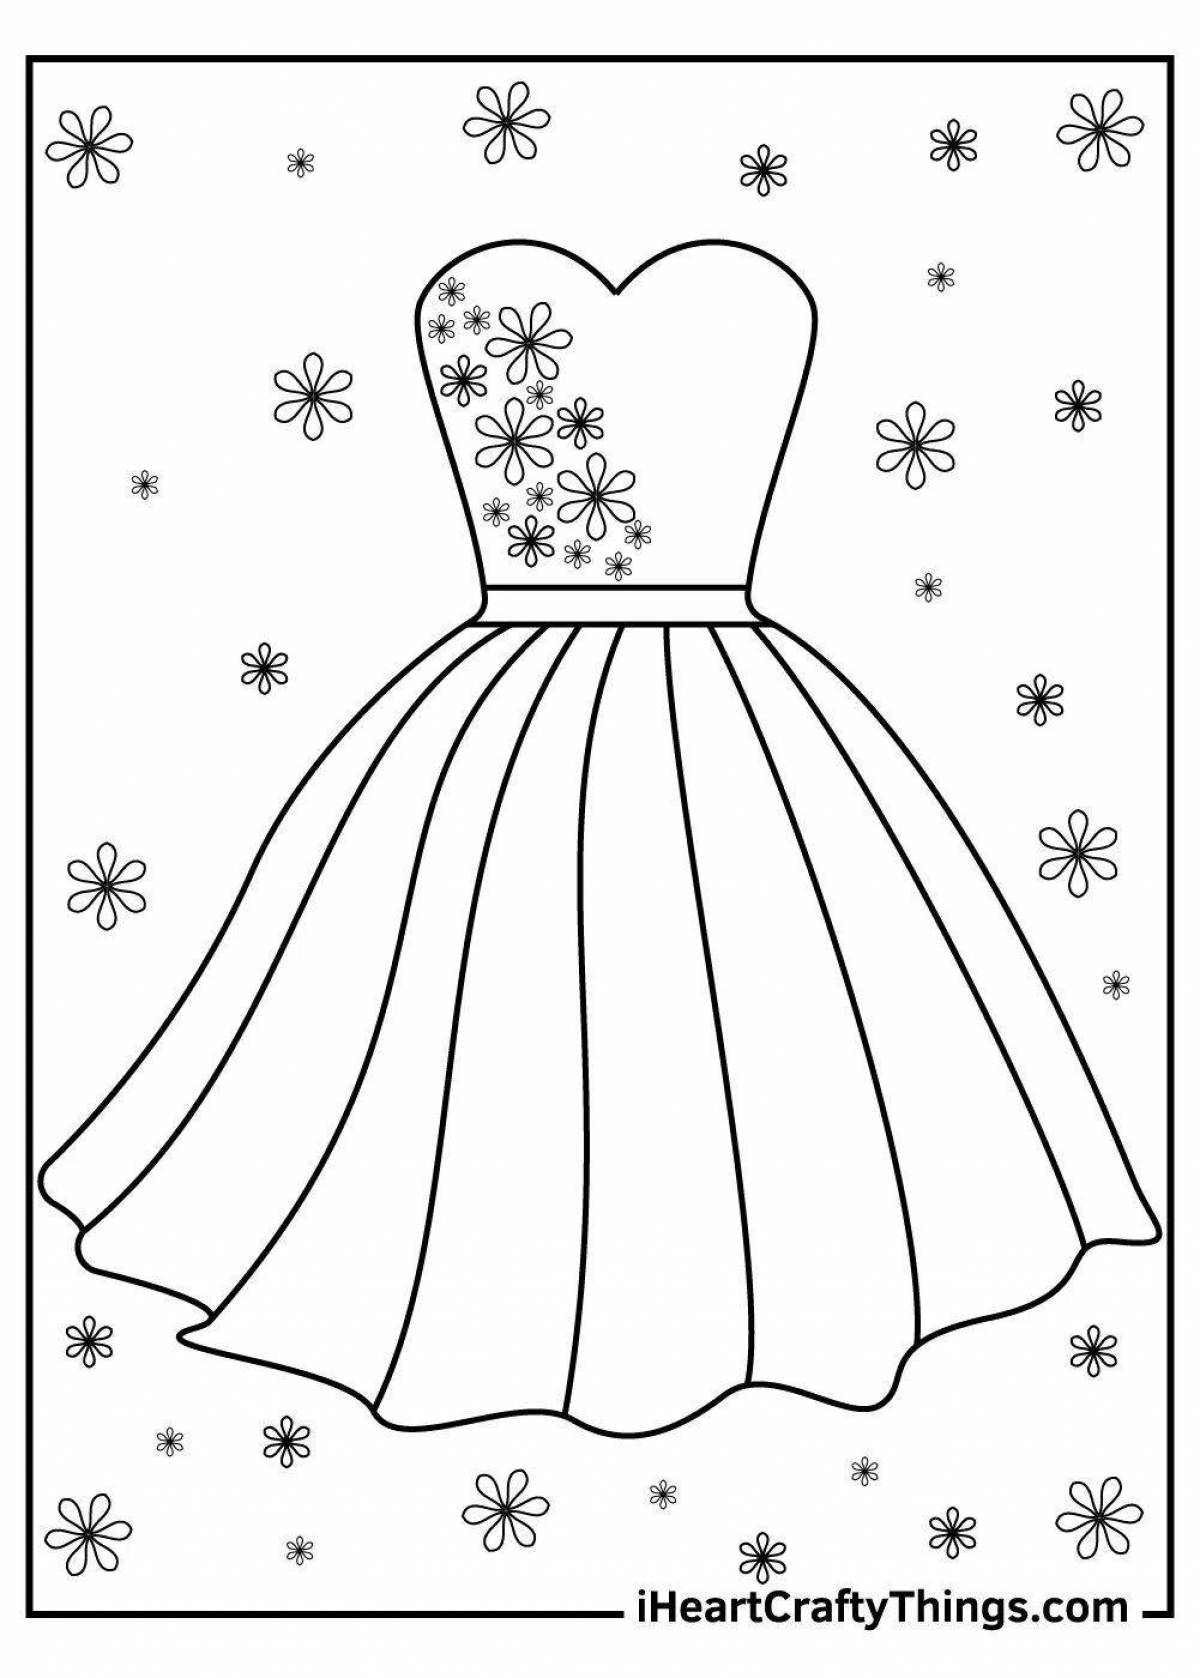 Раскраска милое платье для детей 4-5 лет